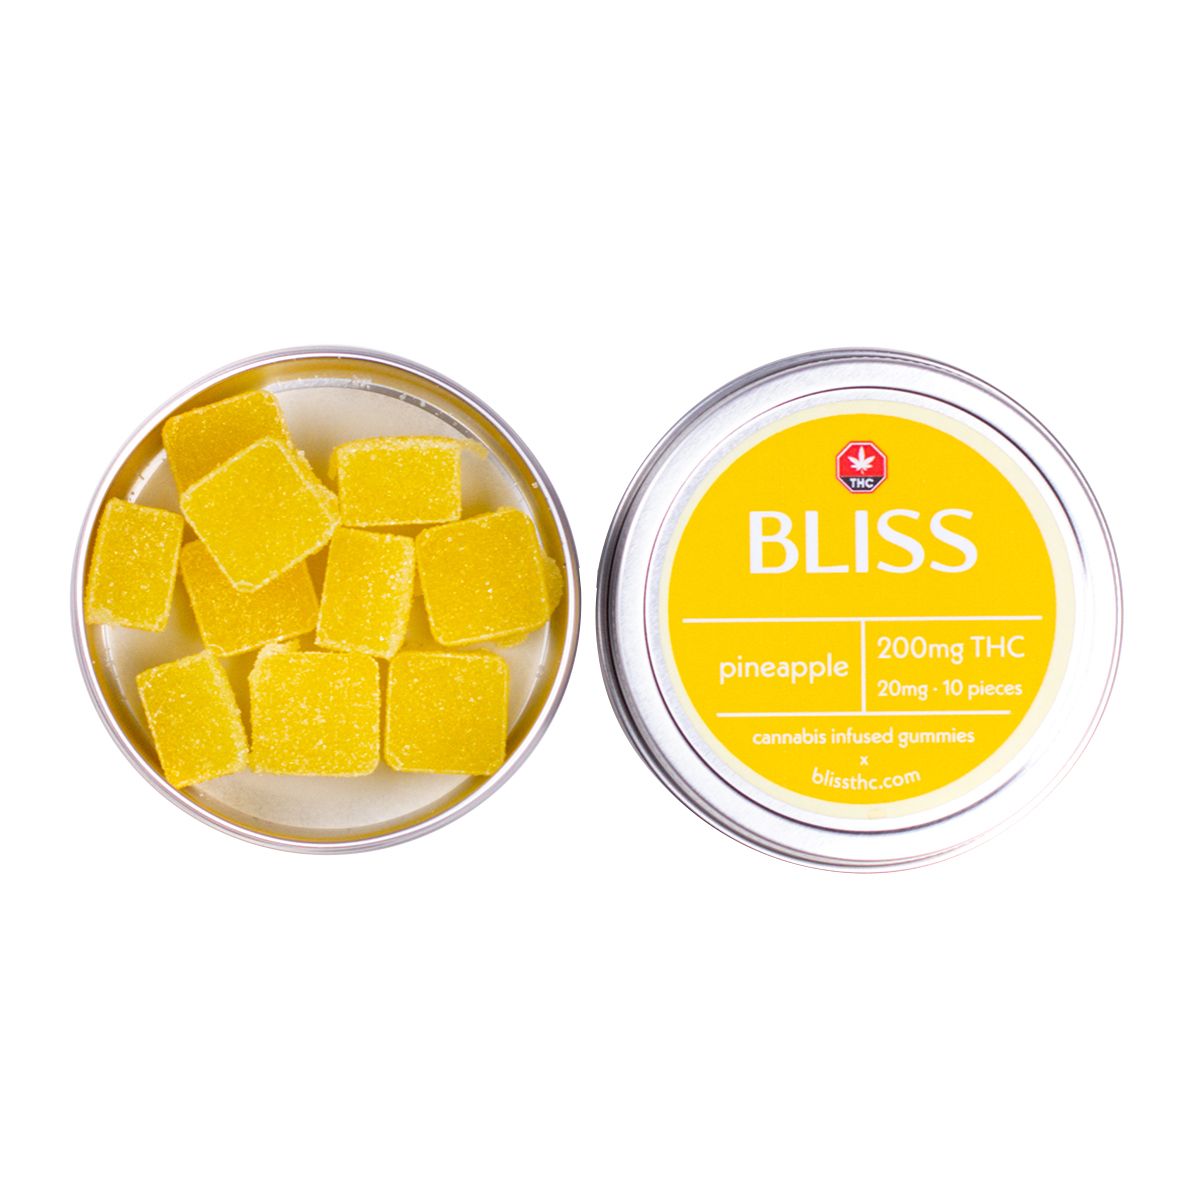 Shop Bliss Pineapple 250mg THC Gummies - Cannabis Edibles